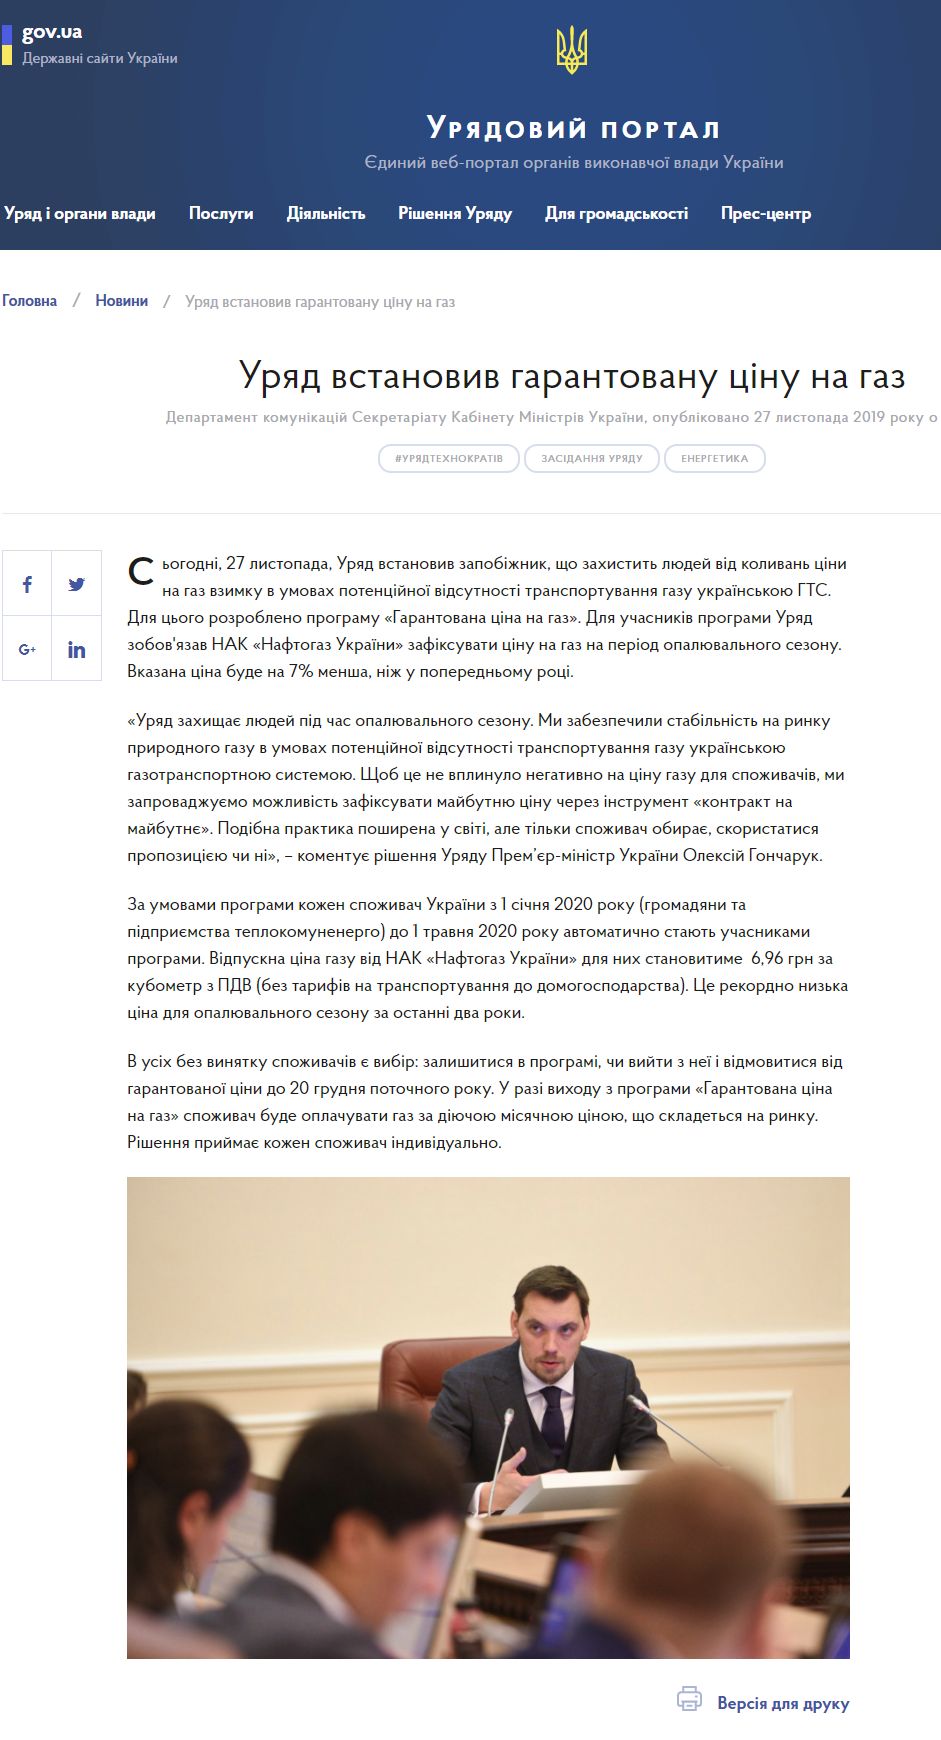 https://www.kmu.gov.ua/news/uryad-vstanoviv-garantovanu-cinu-na-gaz